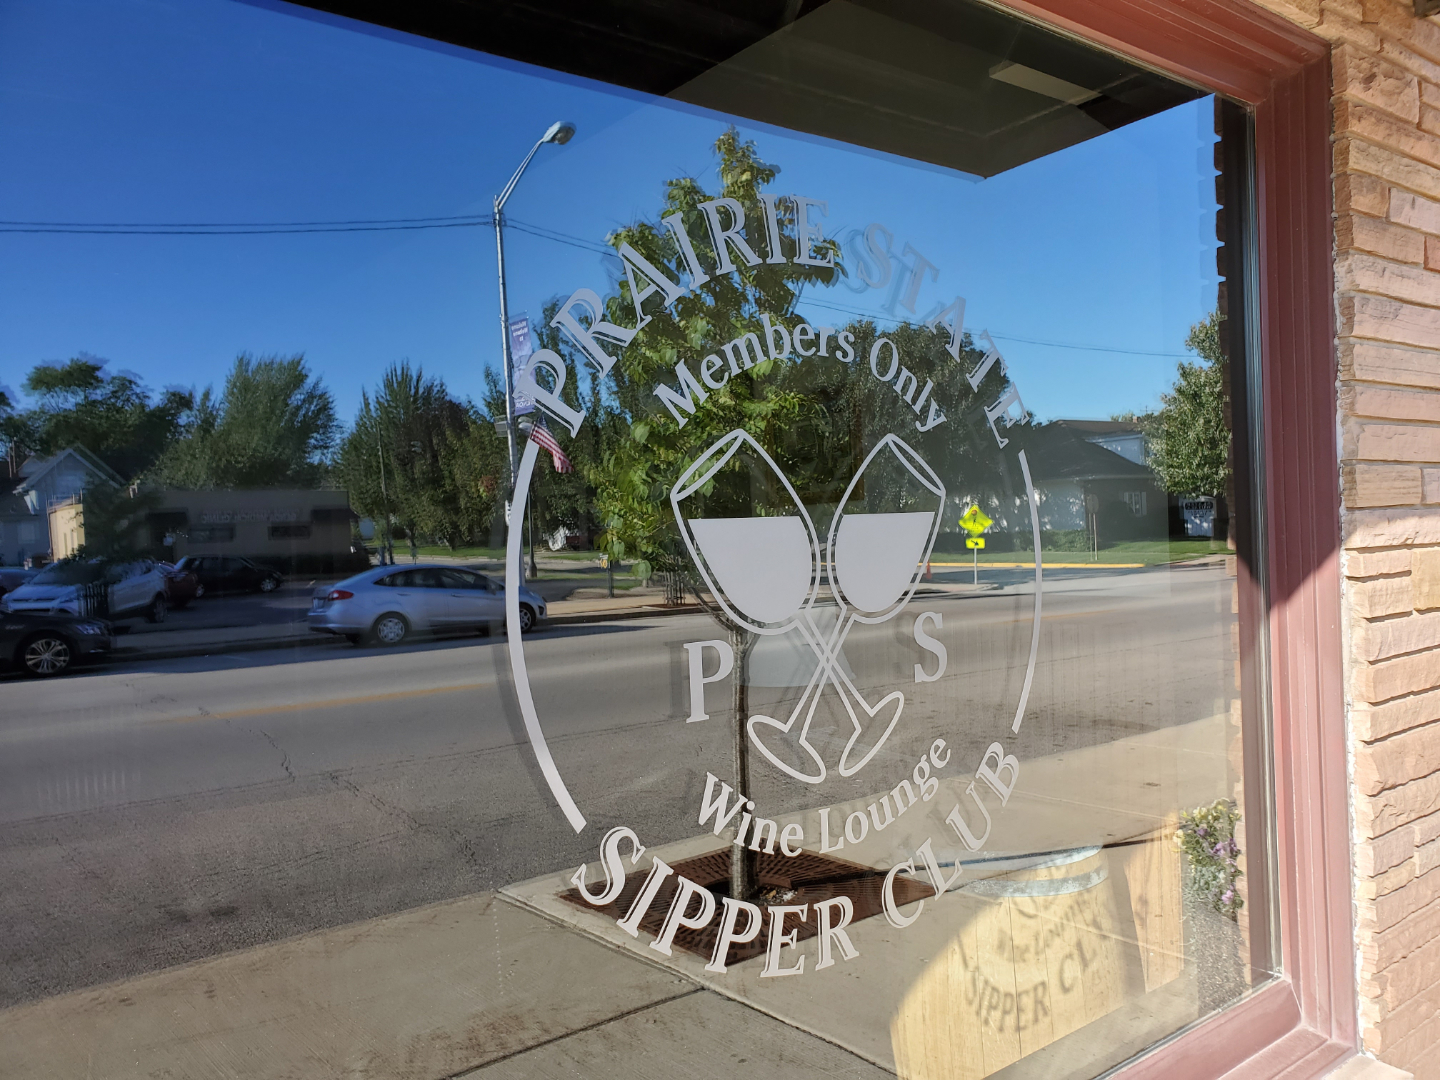 Sipper Club Logo on Window